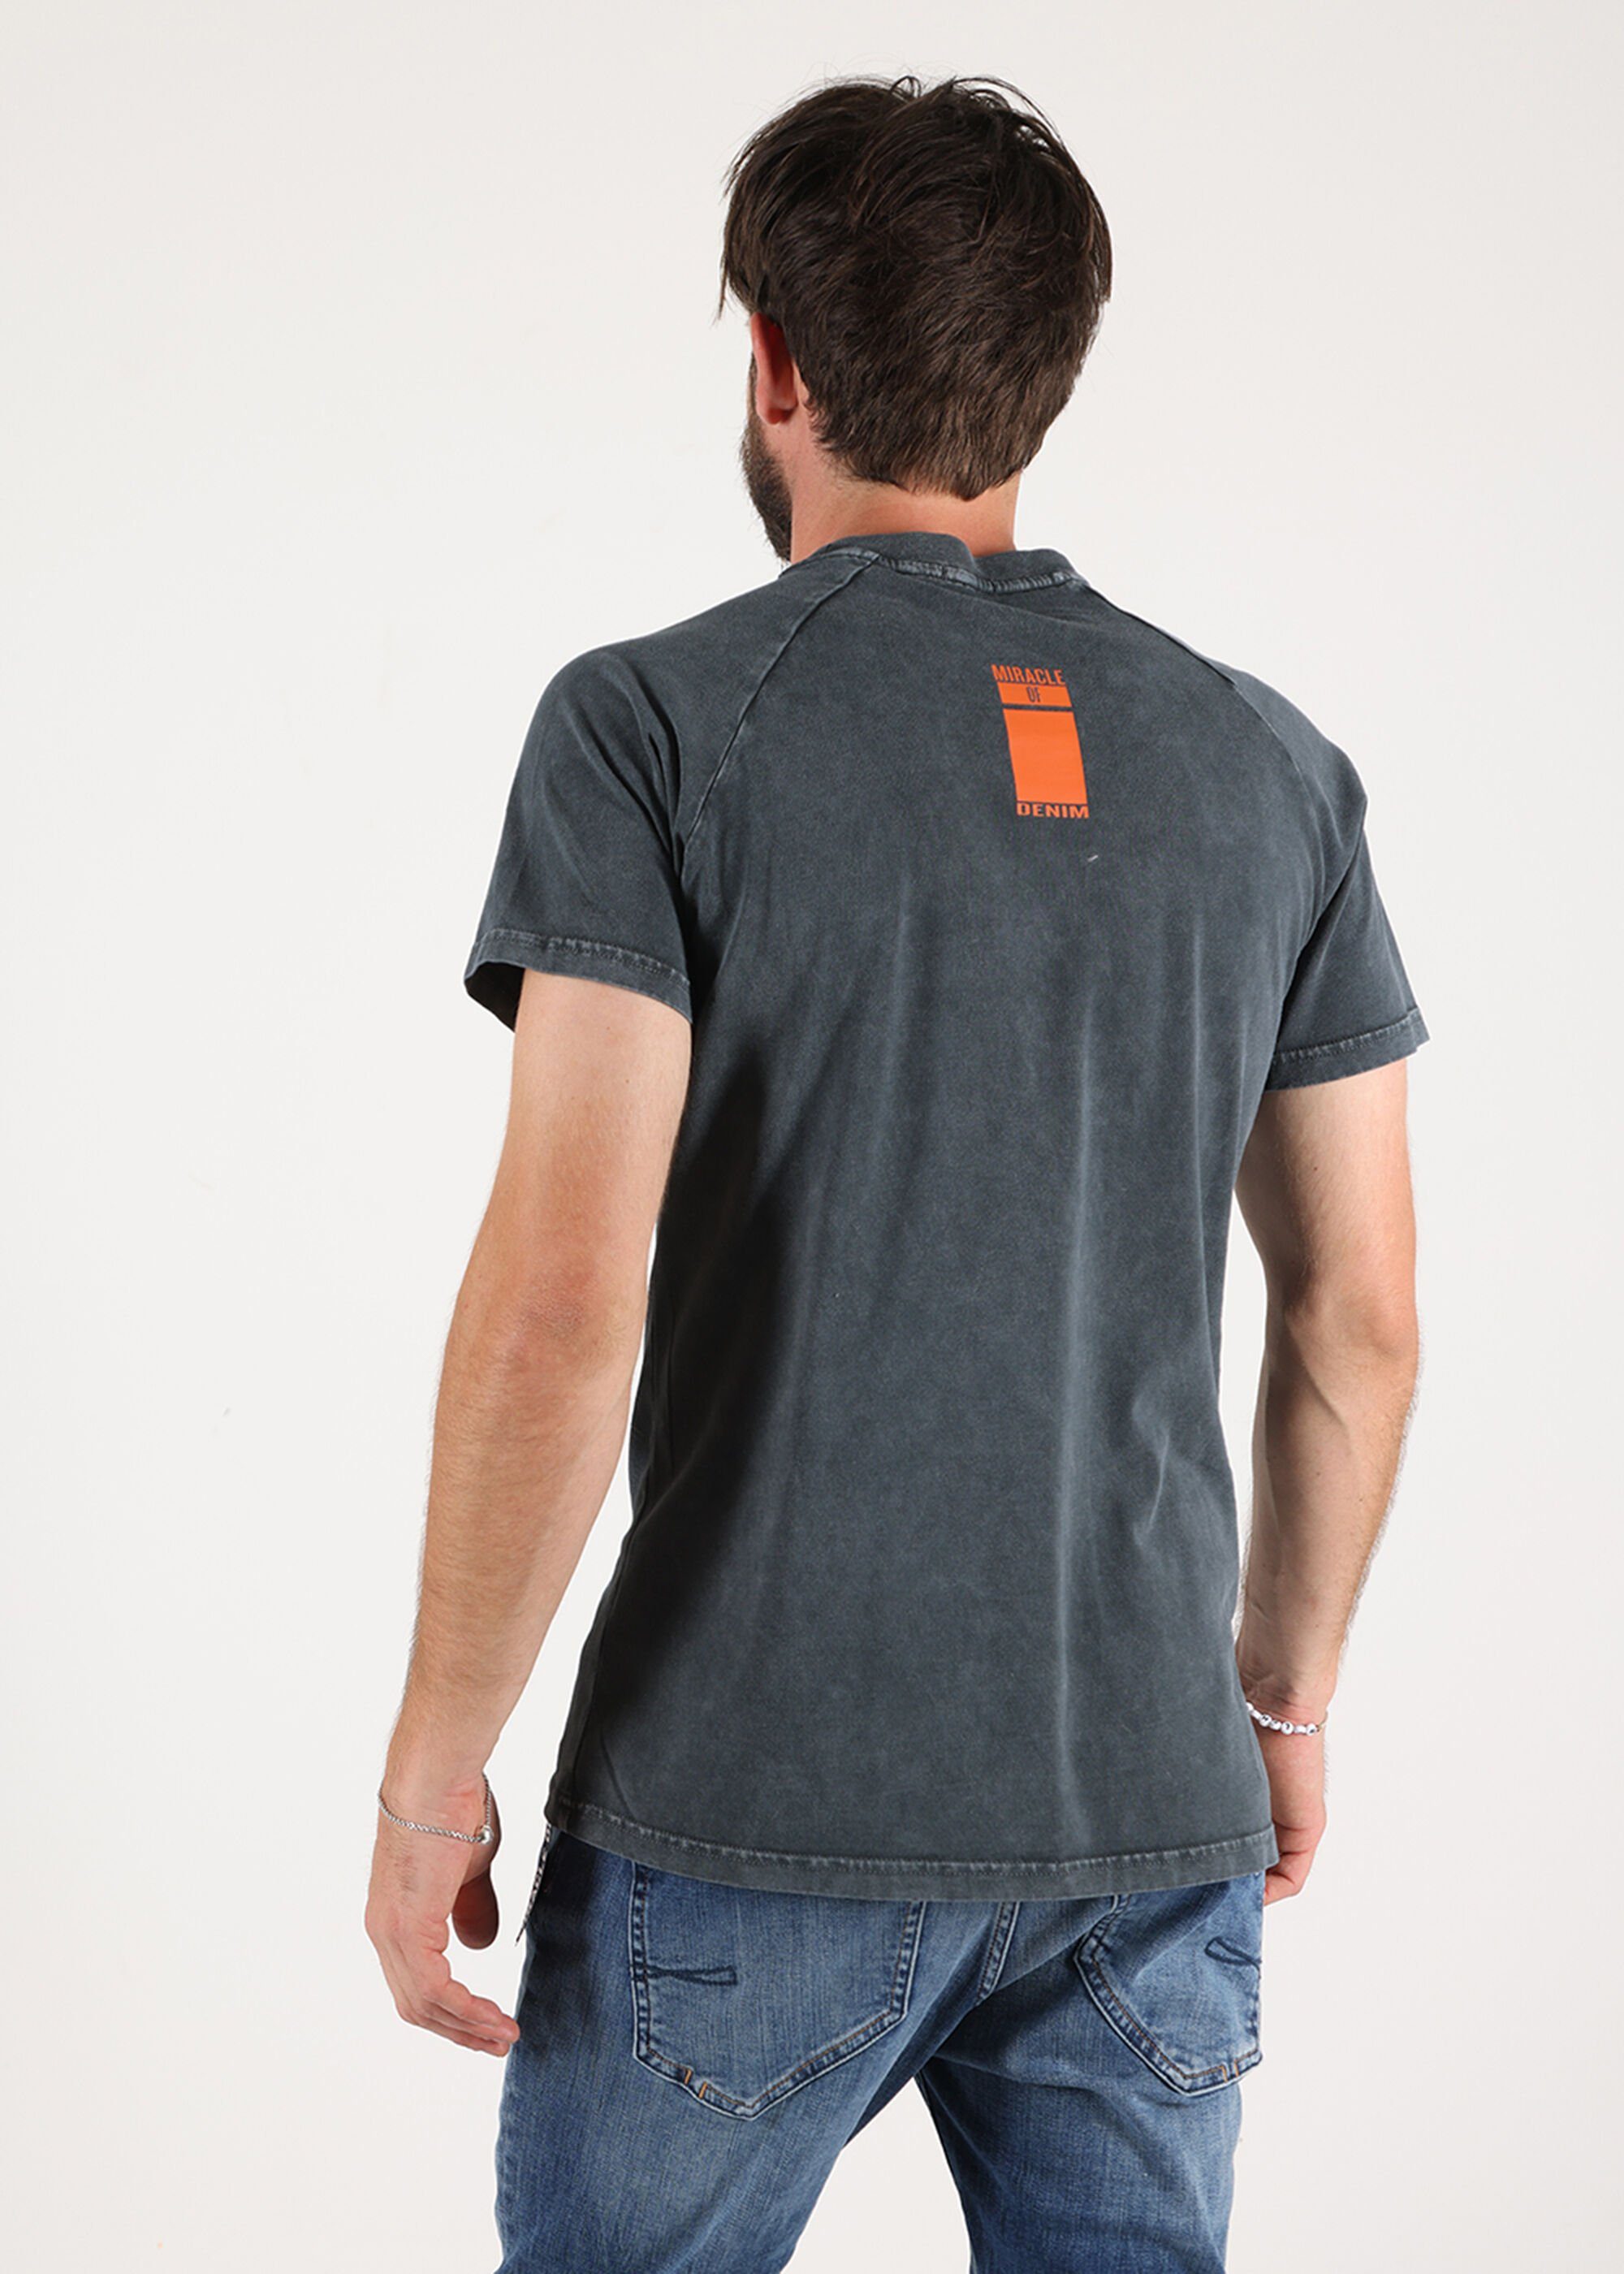 Miracle Denim unifarbenen Design T-Shirt Anthra of im